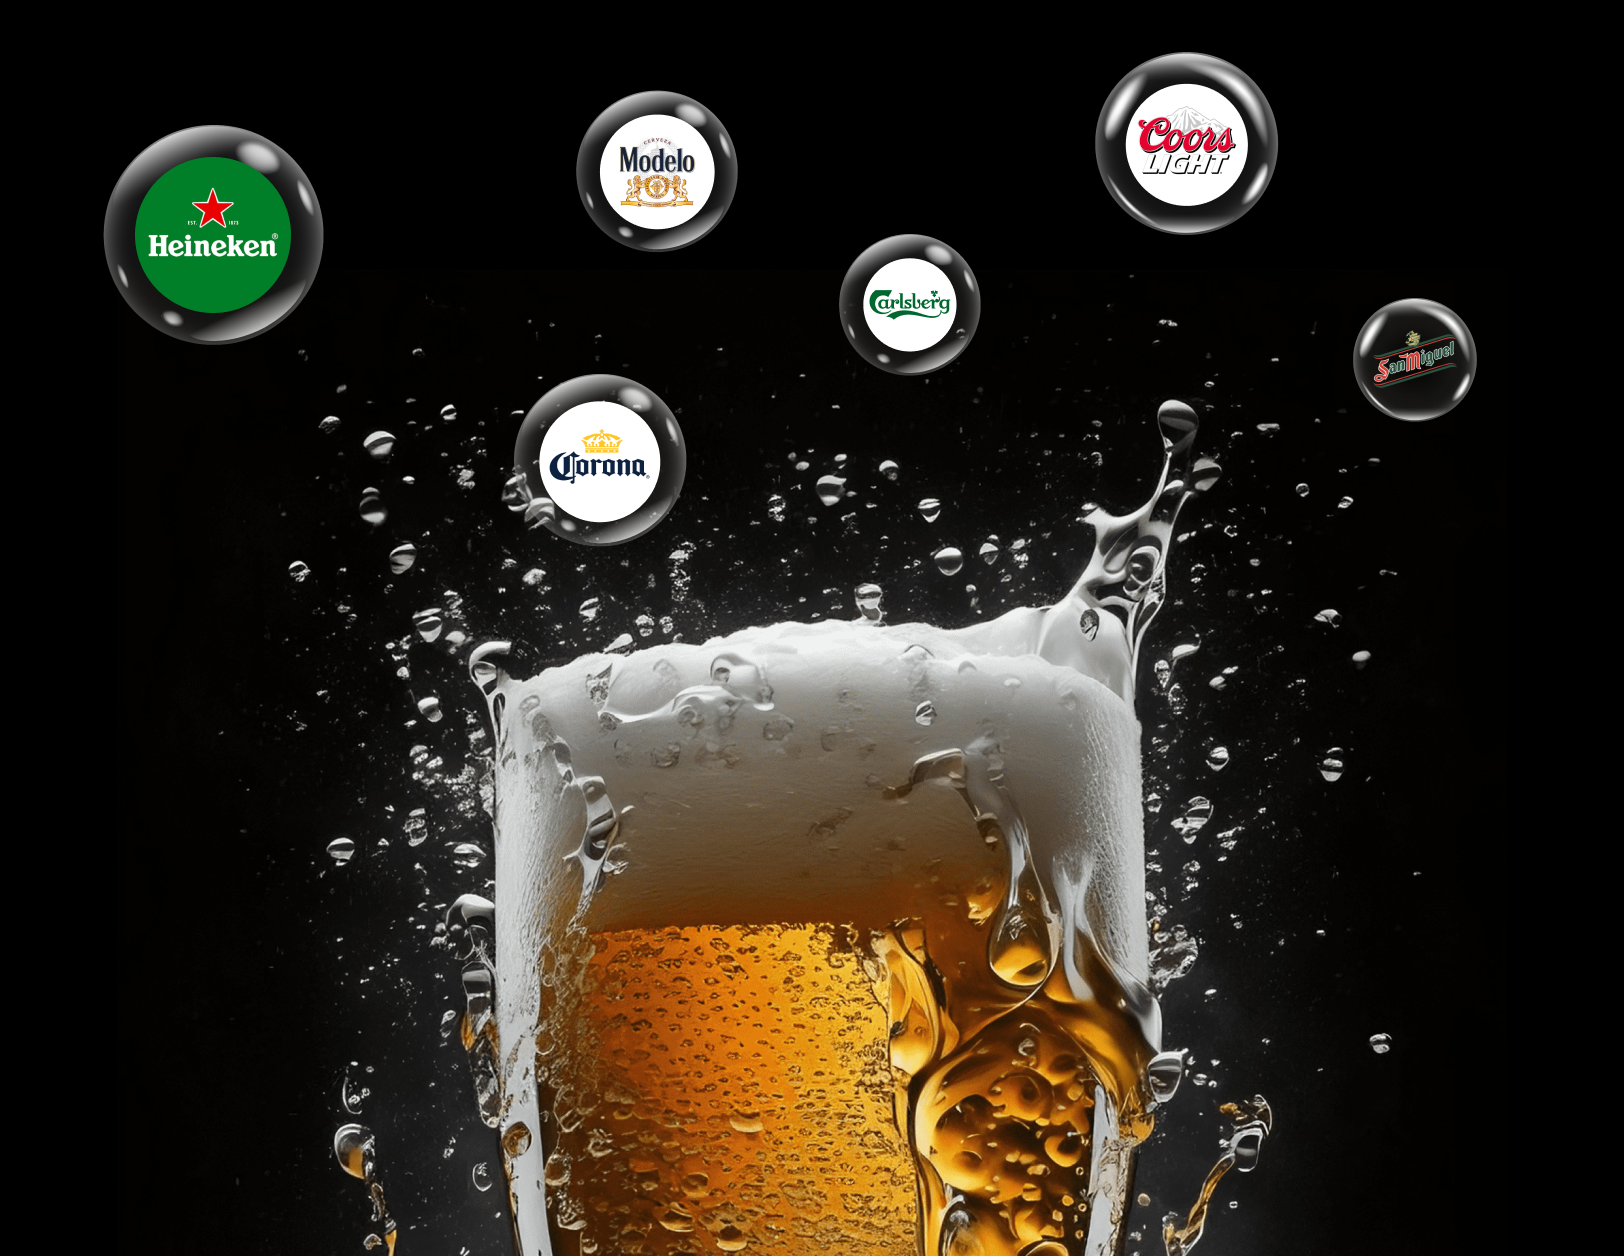 Libro electrónico sobre la industria cervecera